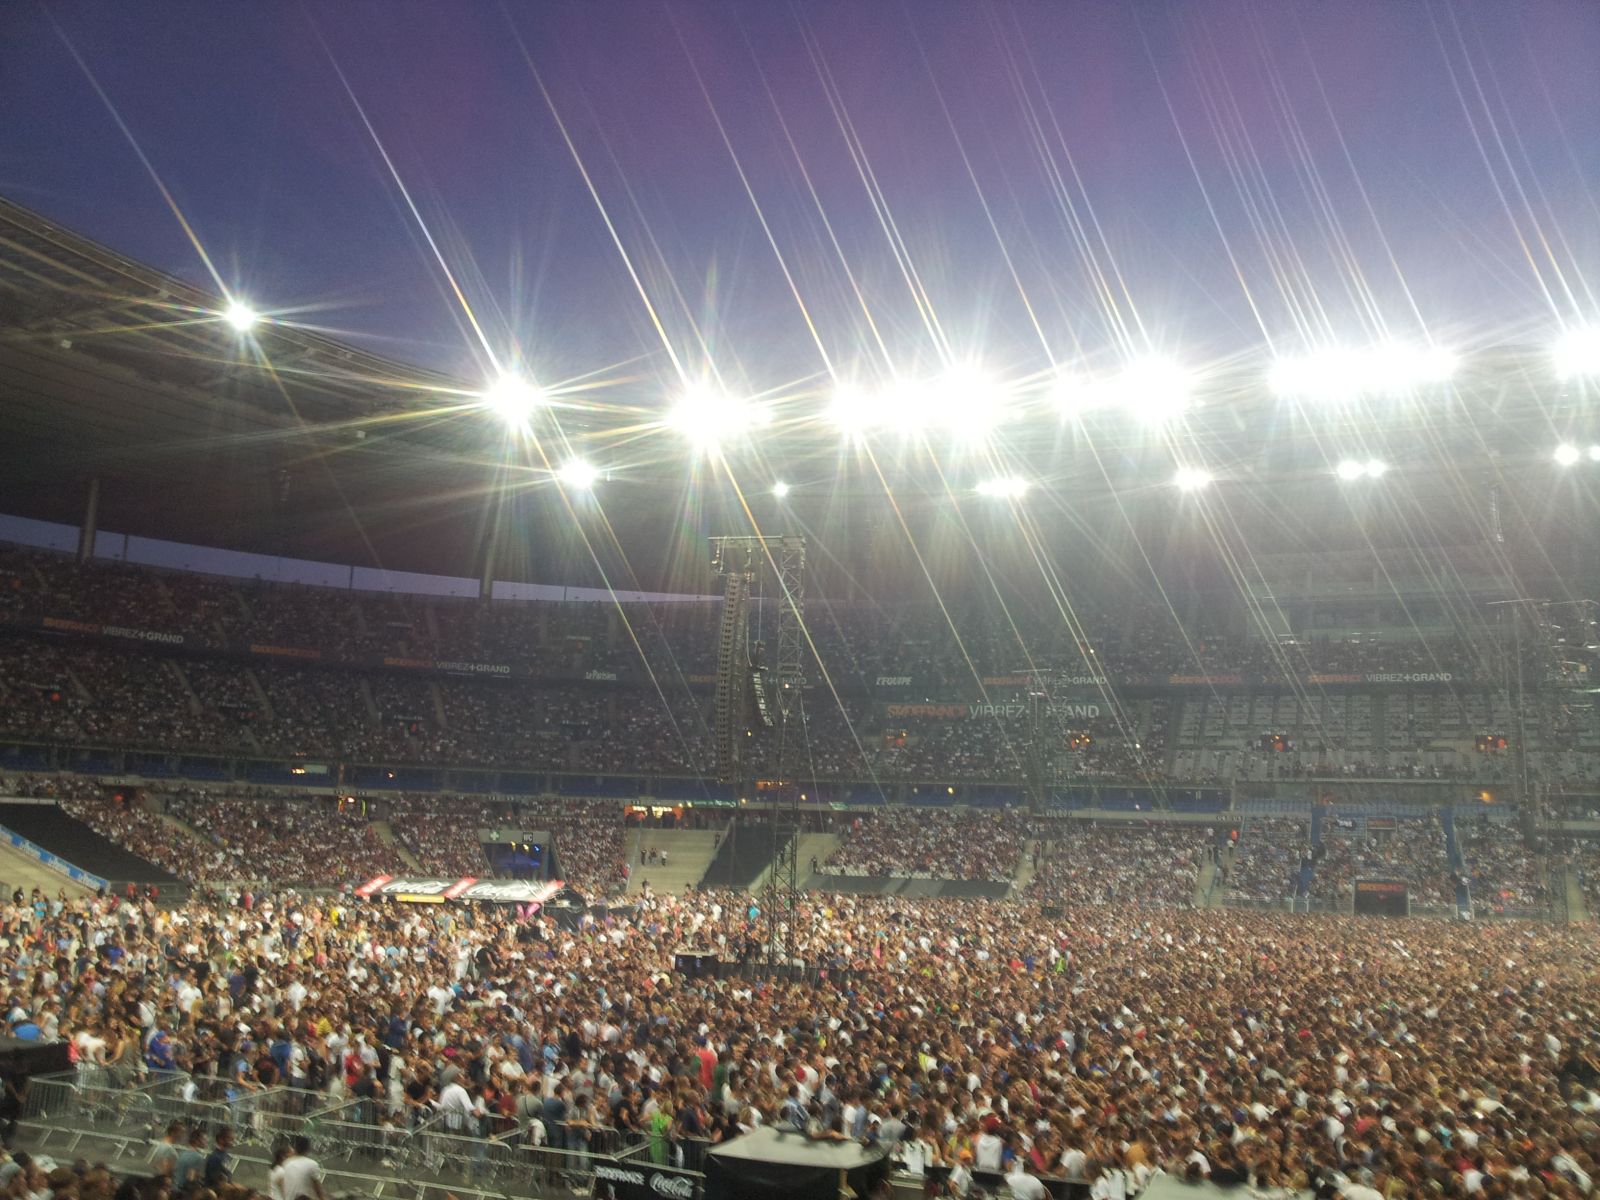 Eminem Live at Stade de France 22 Agosto 2013 - Video